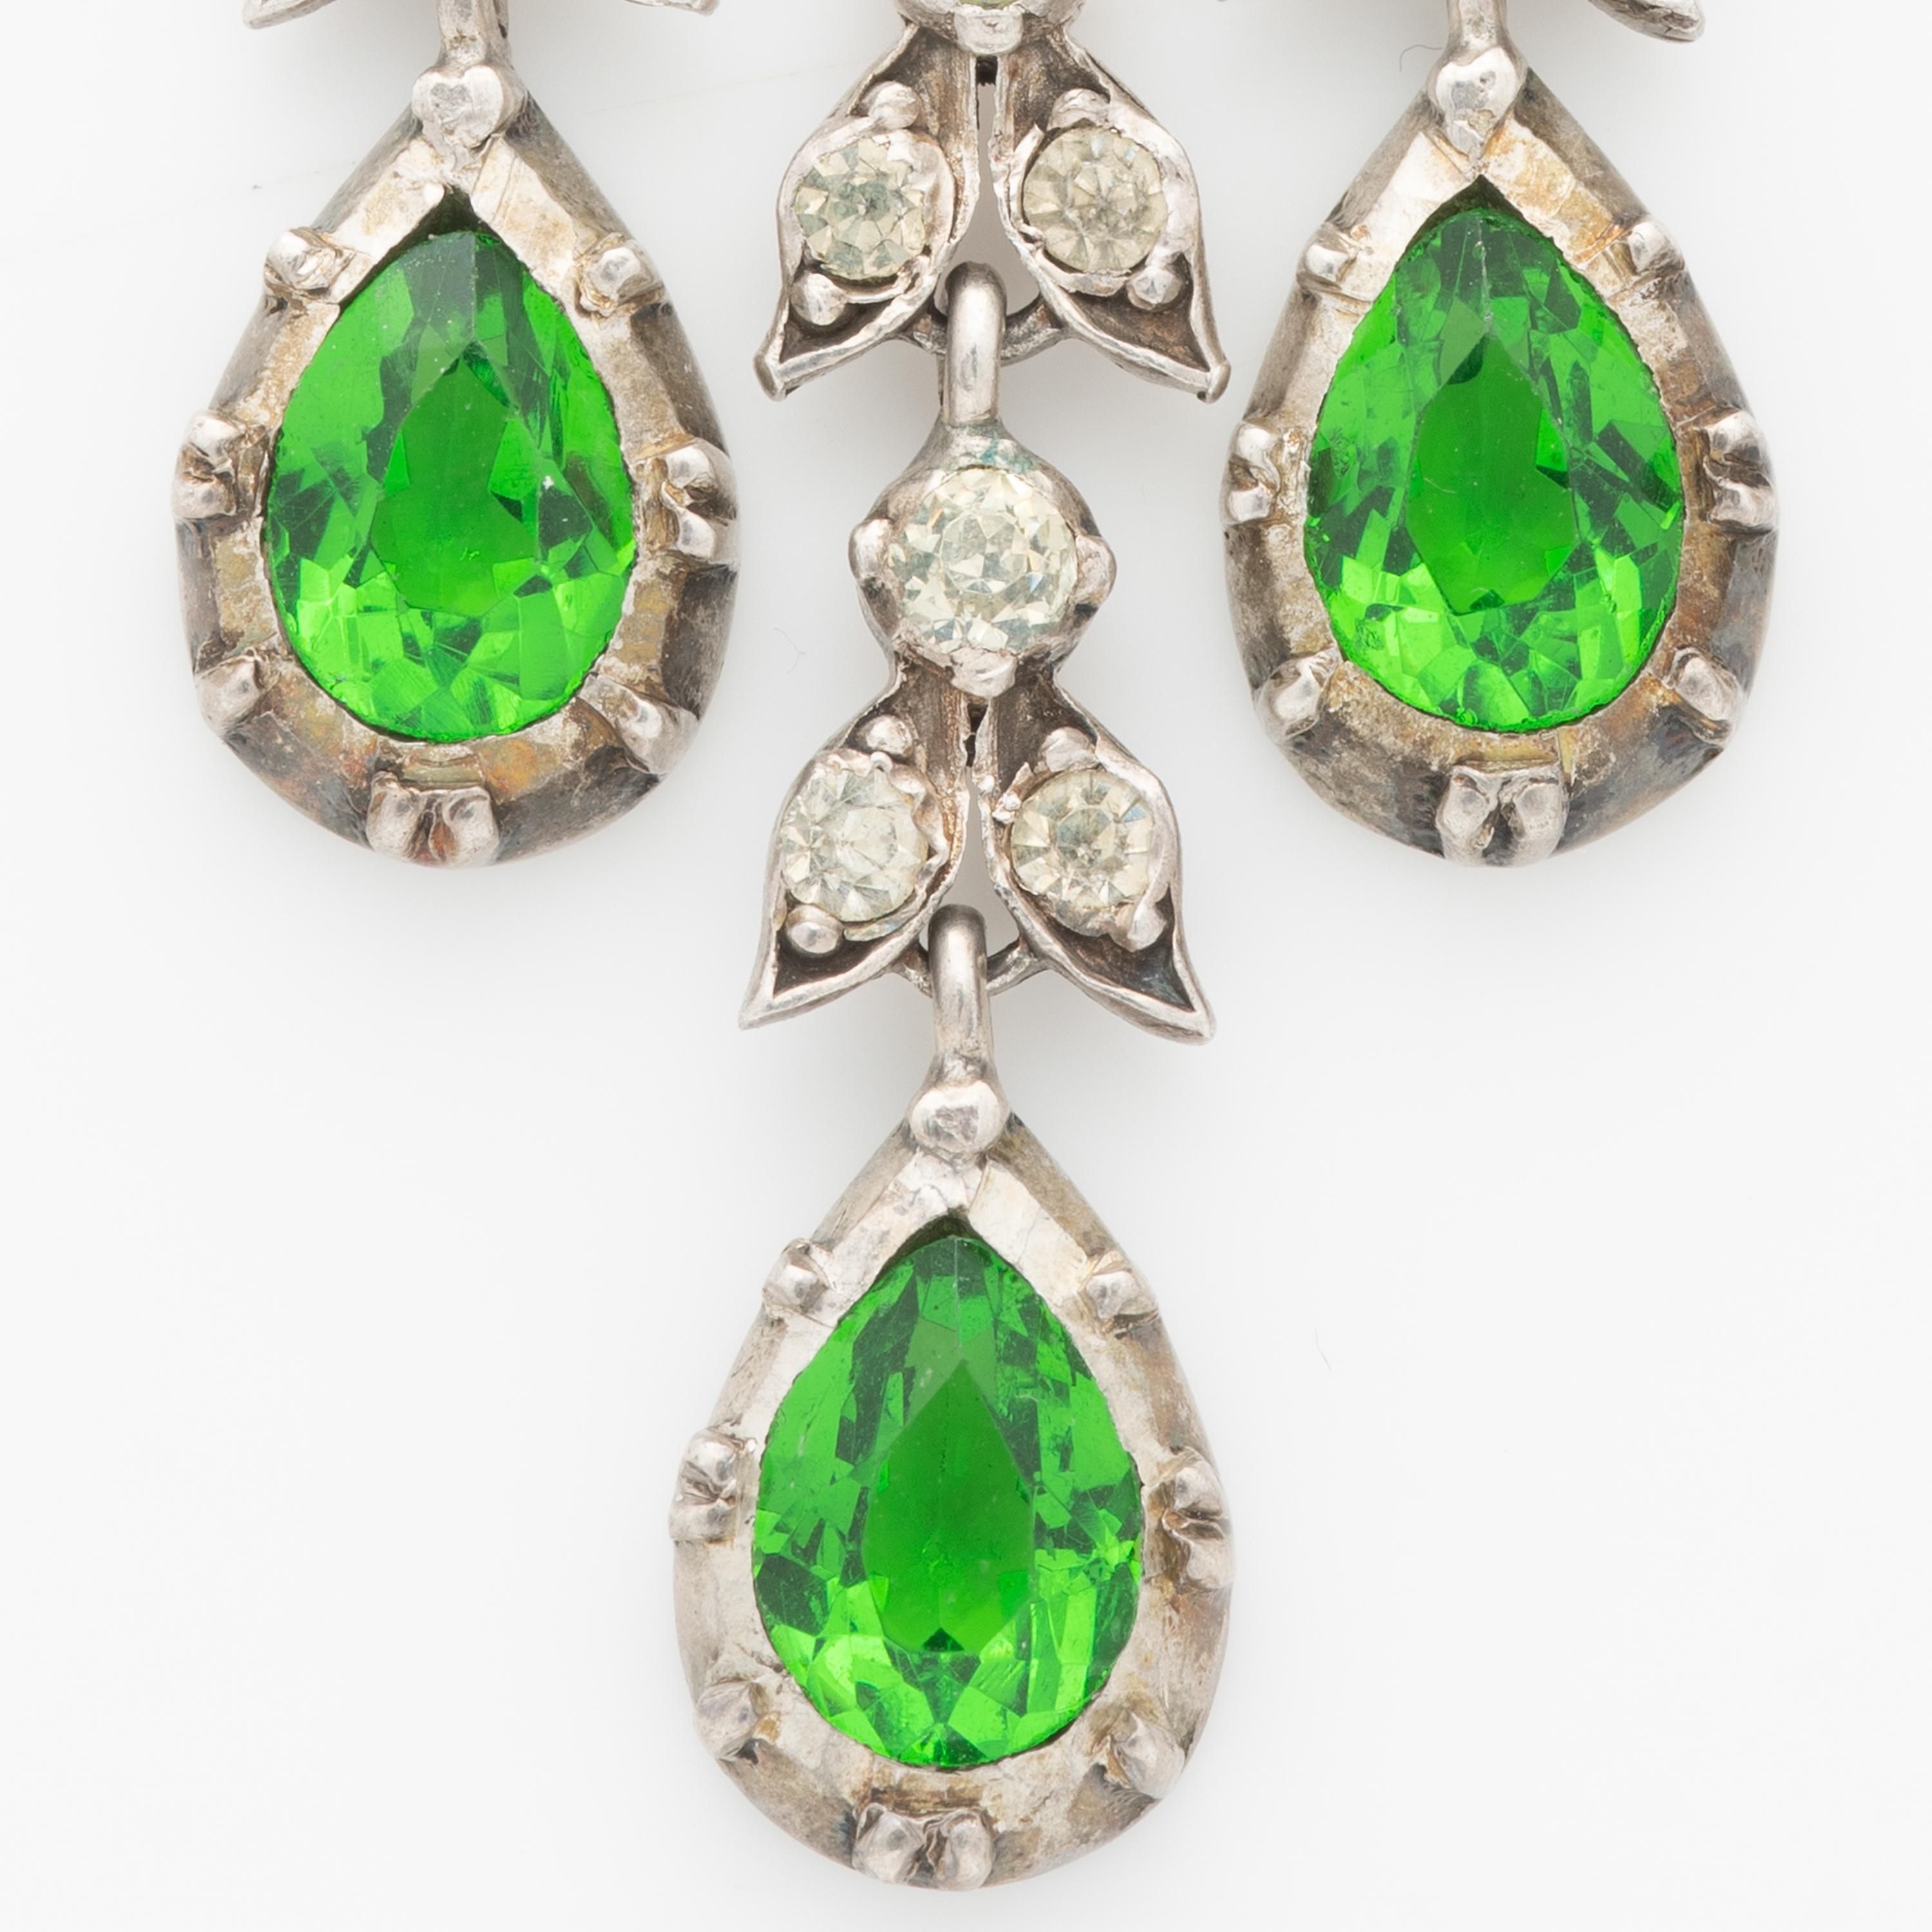 19th century earrings